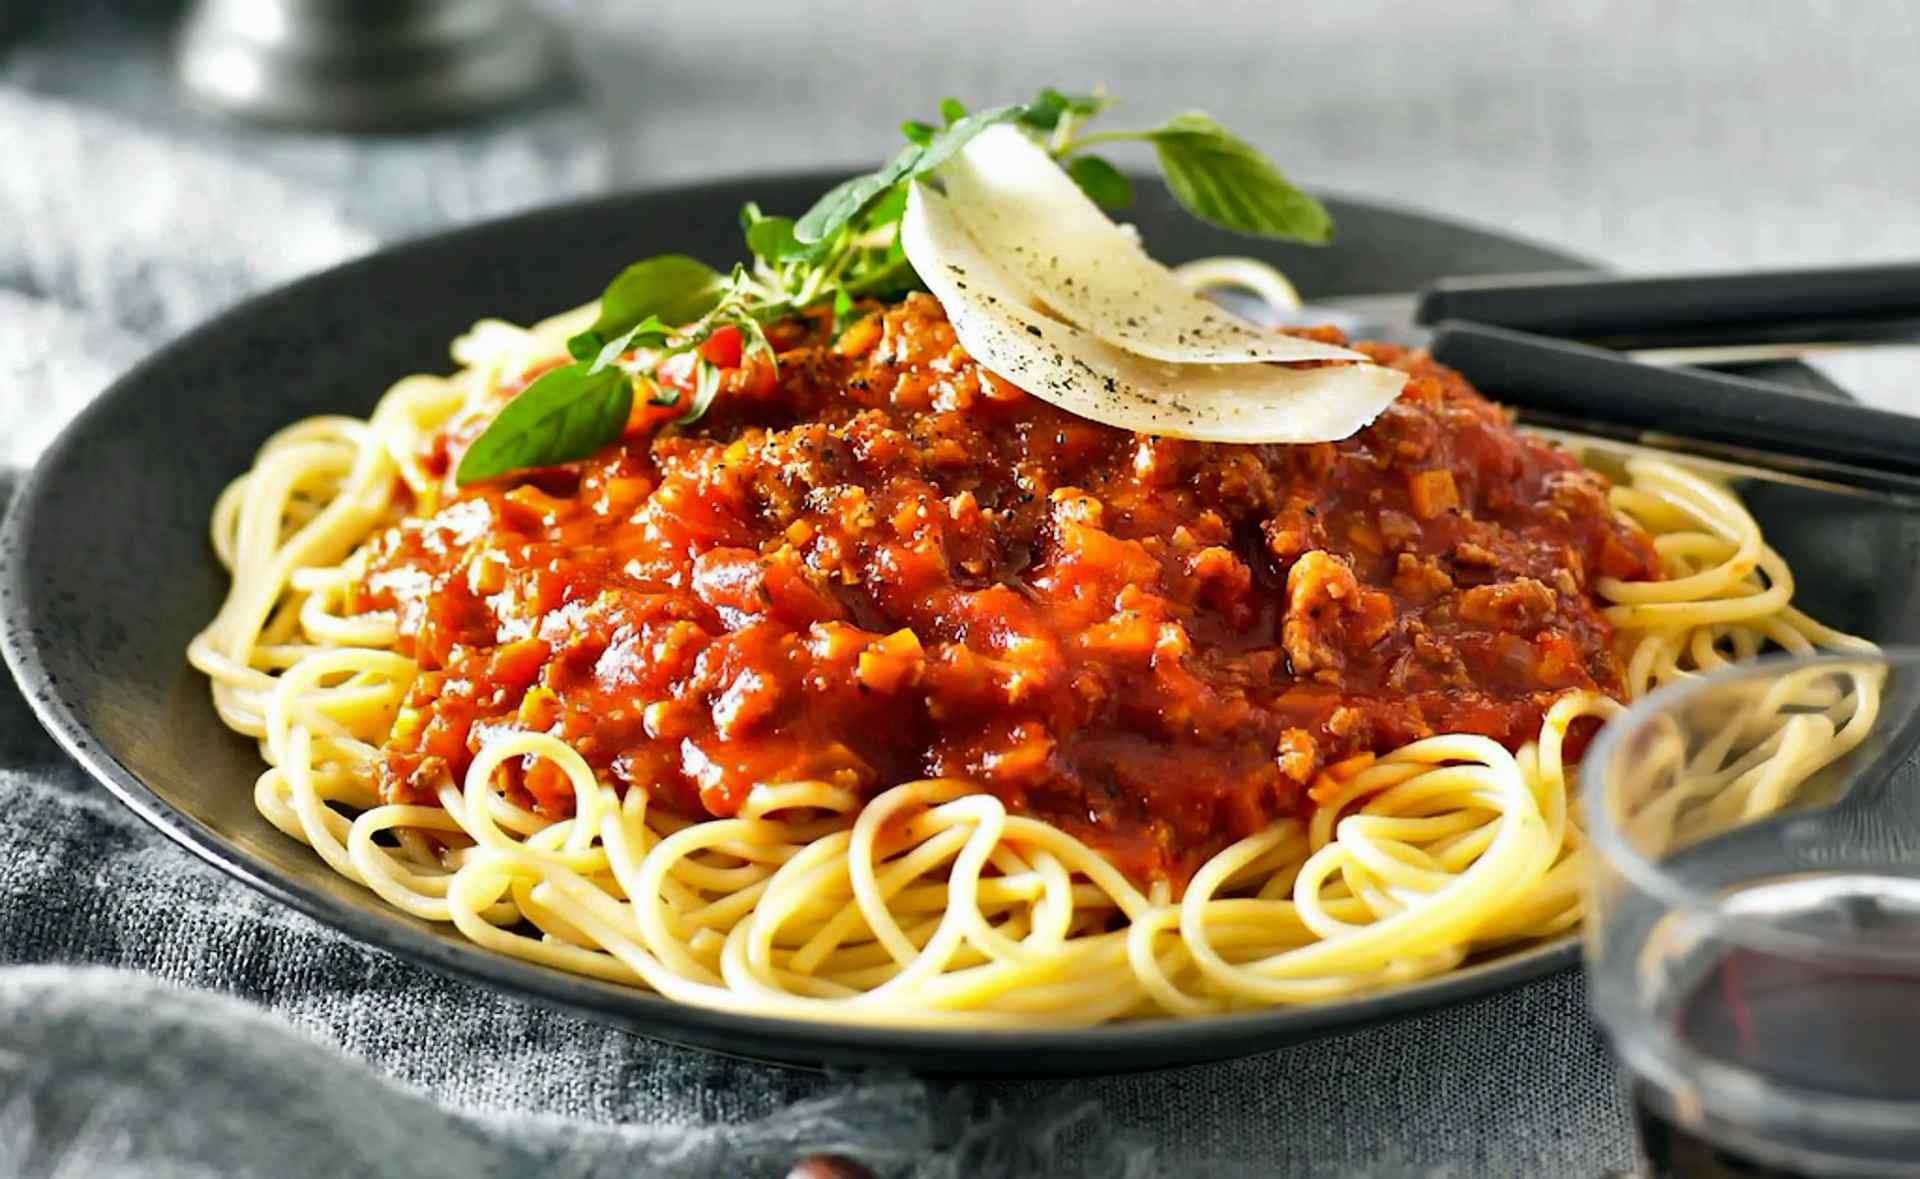 podliva dlja spagetti recepty vkusnyh i prostyh podliv b50198b Підлива для спагетті: рецепти смачних і простих підлив